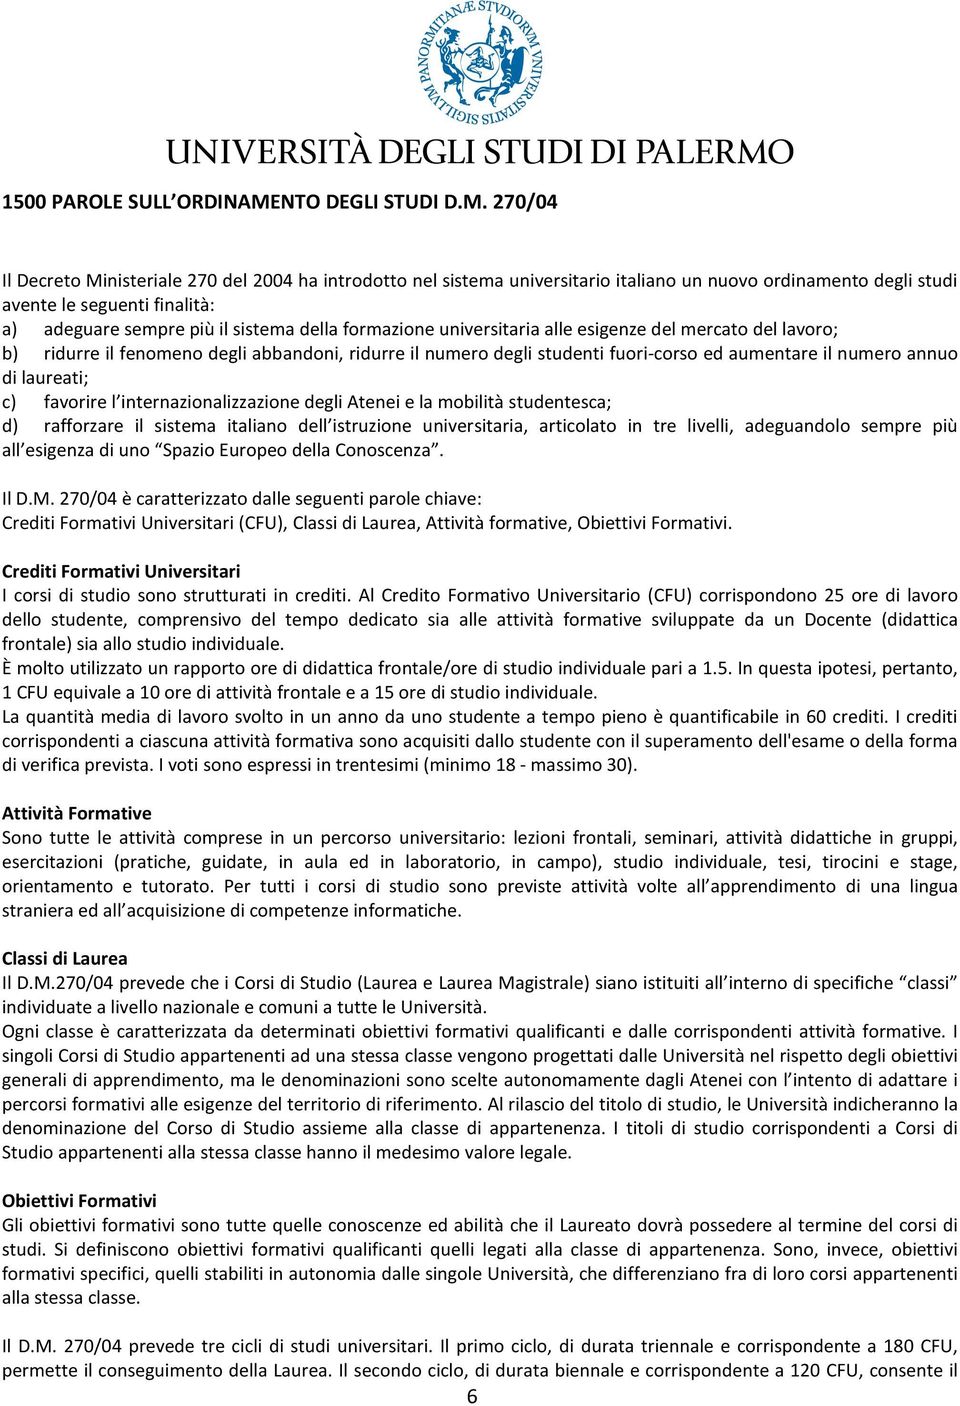 270/04 Il Decreto Ministeriale 270 del 2004 ha introdotto nel sistema universitario italiano un nuovo ordinamento degli studi avente le seguenti finalità: a) adeguare sempre più il sistema della